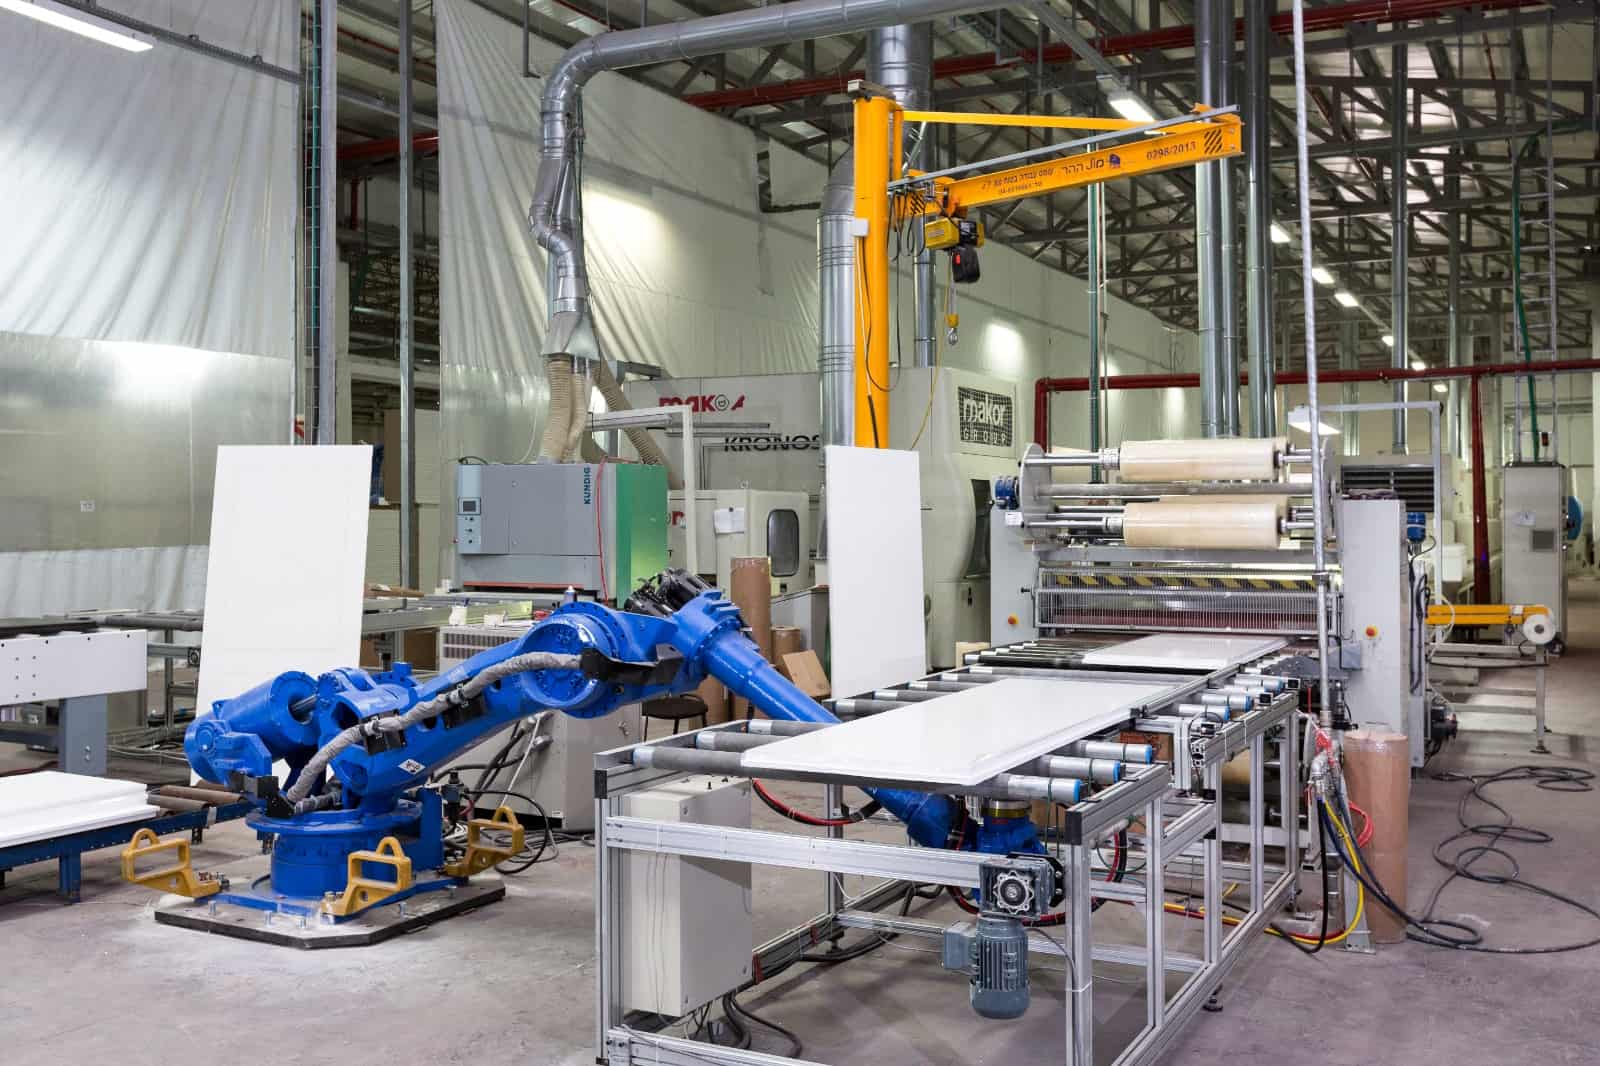 תמונה של מכונות רובוטיות במפעל היצור